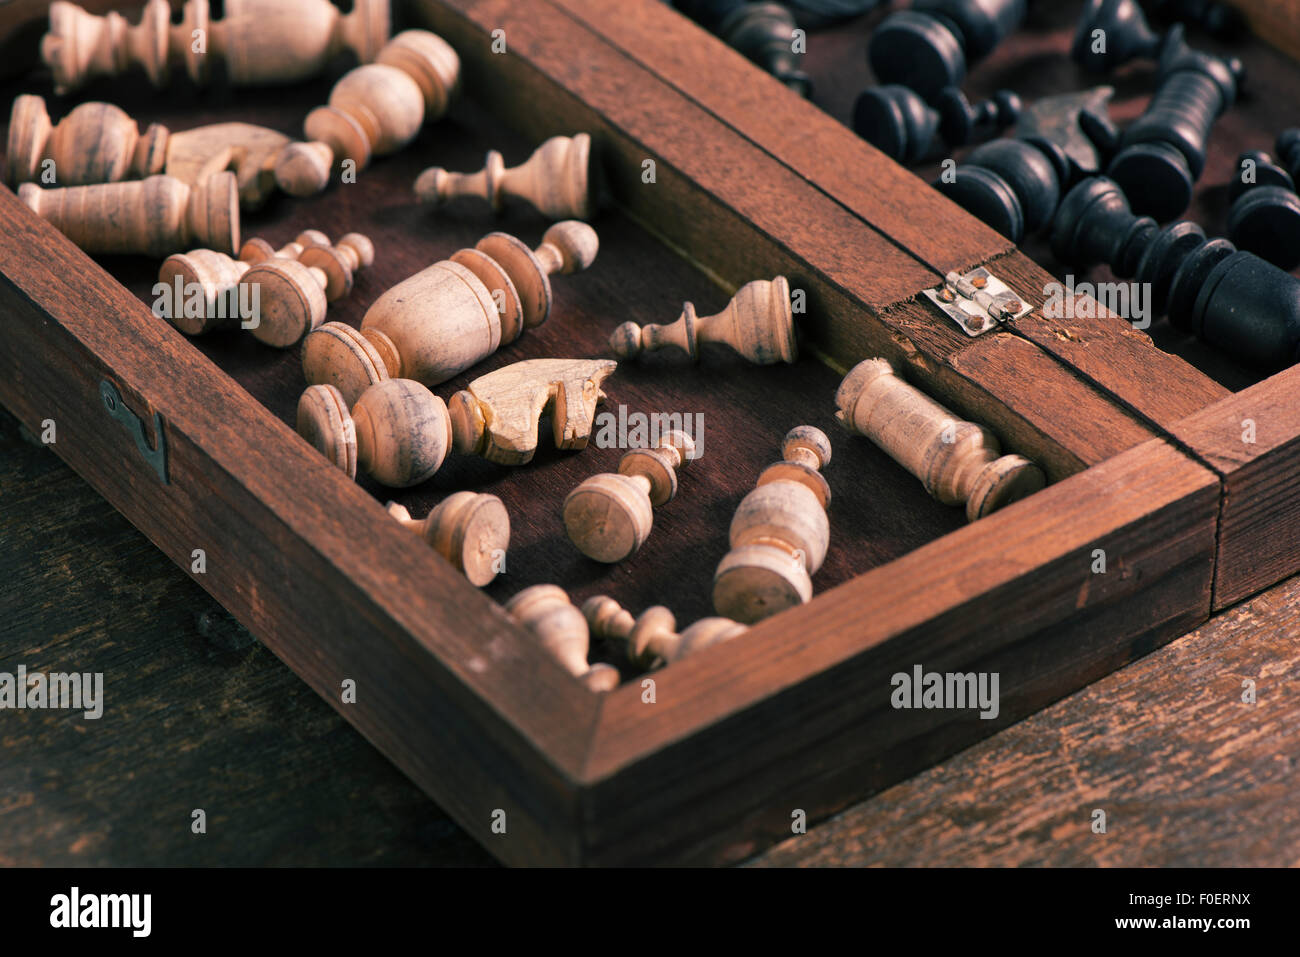 Pezzi di scacchi in una scatola di legno. Immagine concettuale della strategia e della concorrenza. Foto Stock